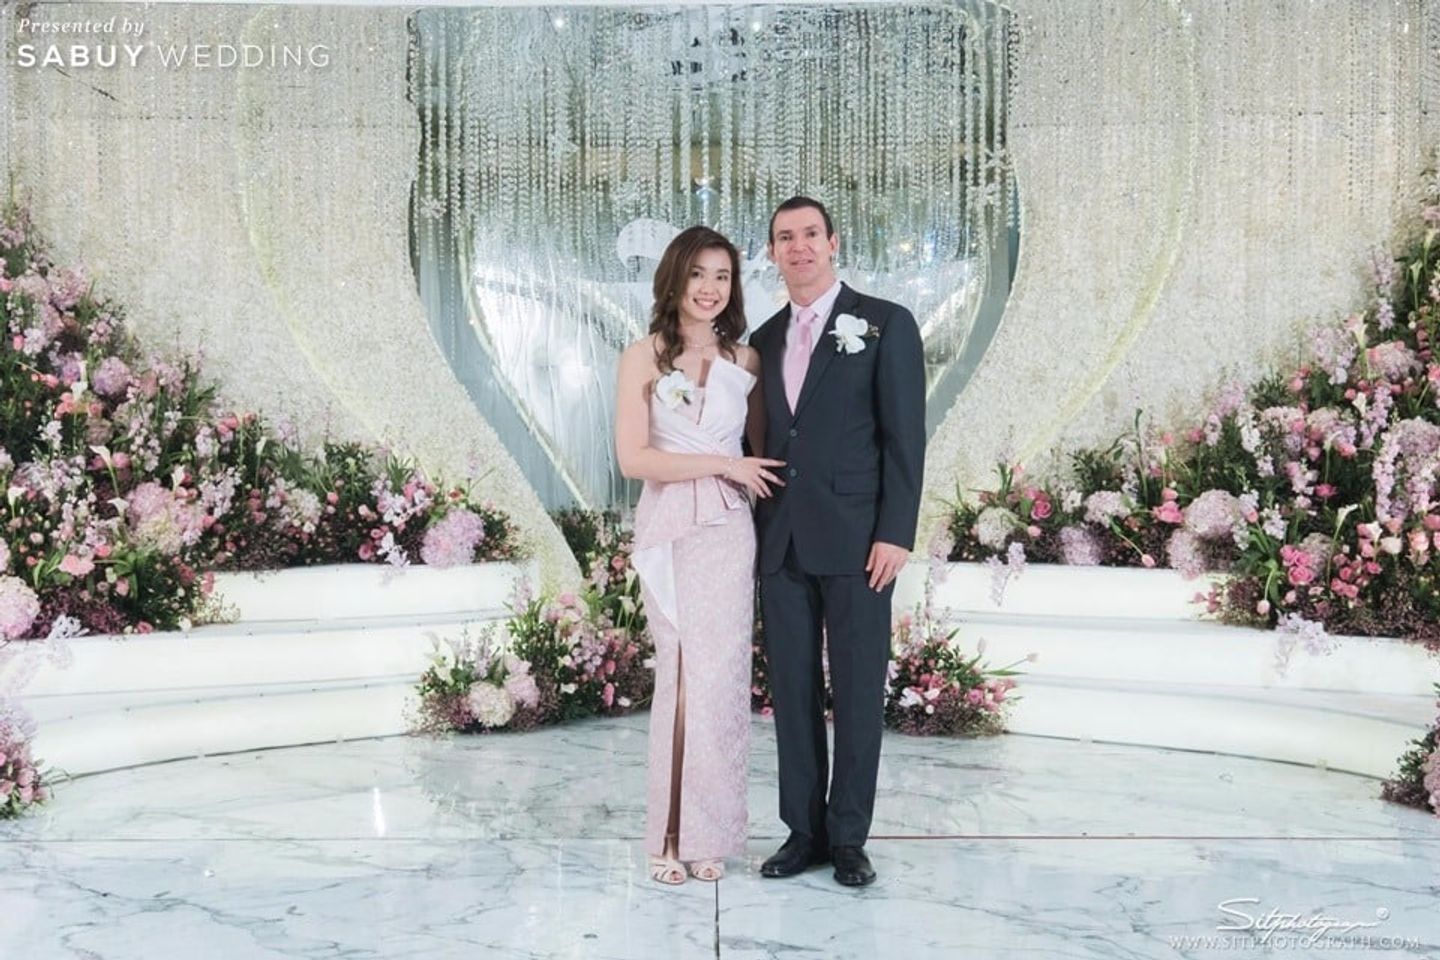 backdrop งานแต่ง,จัดดอกไม้งานแต่ง,ตกแต่งงานแต่ง รีวิวงานแต่ง 4 มิติยุคใหม่ ส่งผ่านความรู้สึก ครบทุกประสาทสัมผัส @Plaza Athénée Bangkok